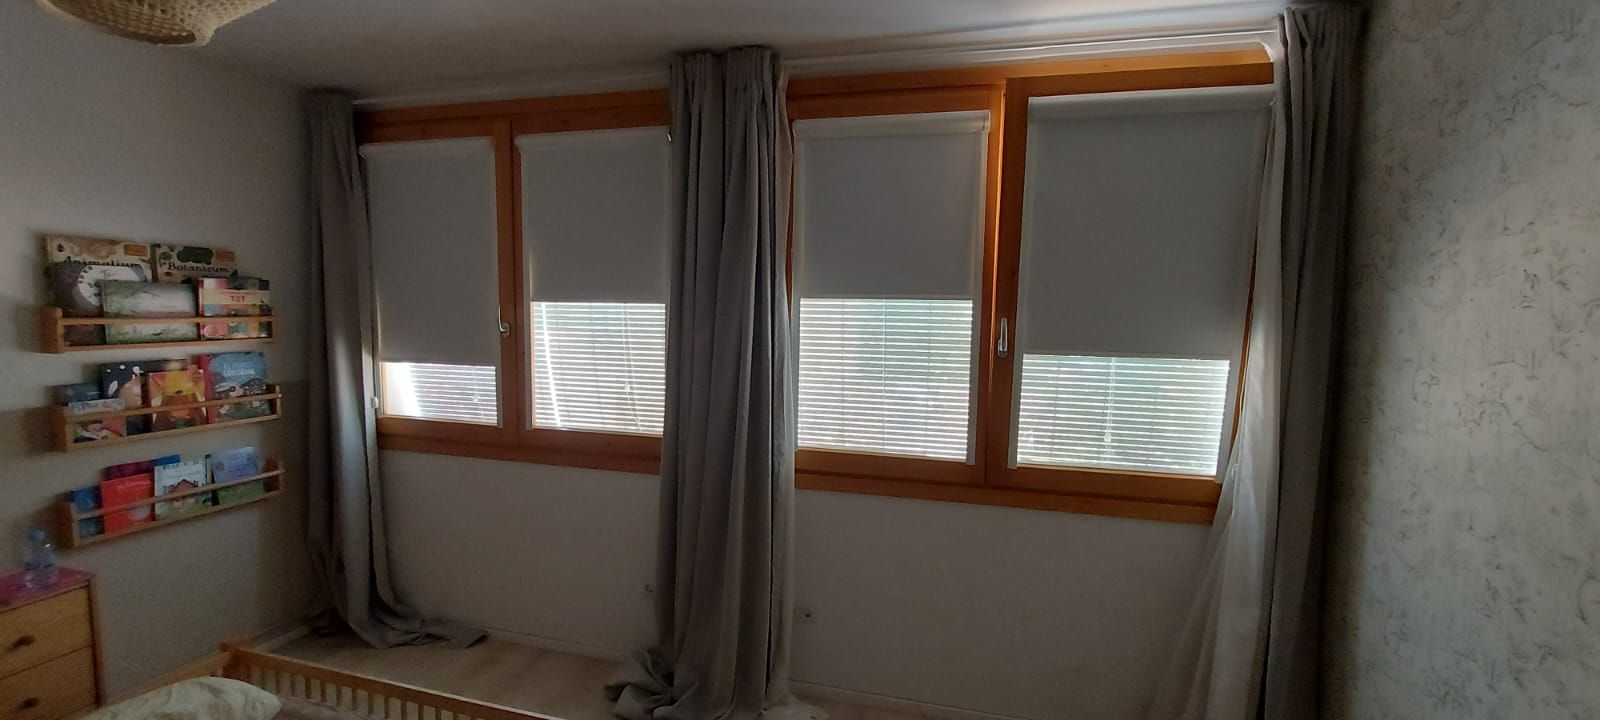 Instalación de cortina con sistema Minifast, tejido Blackout referencia Opac400 y color White, en vivienda de Sant Boi